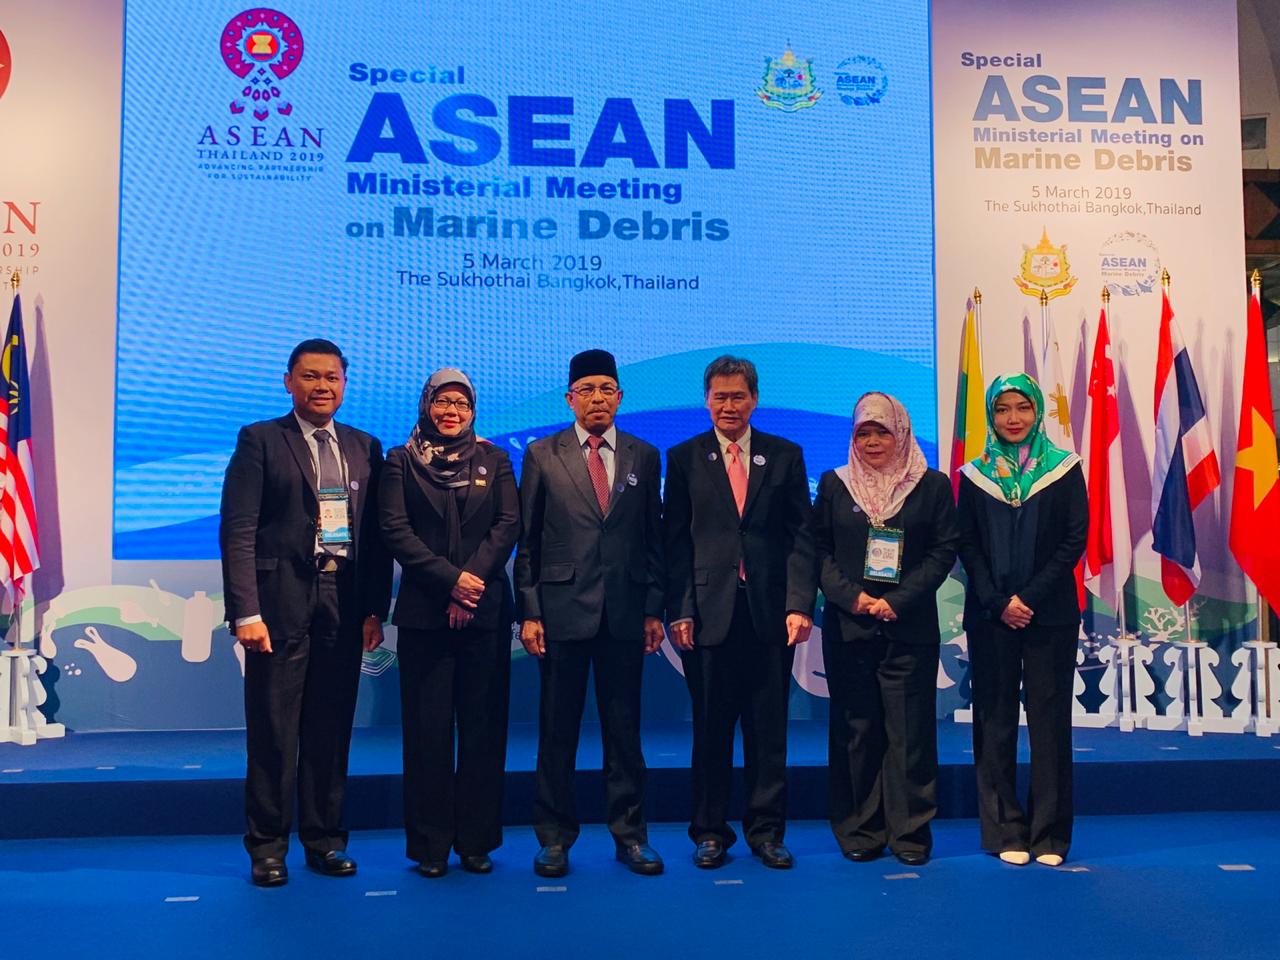 4_Special ASEAN Ministerial Meeting on Marine Debris.jpg